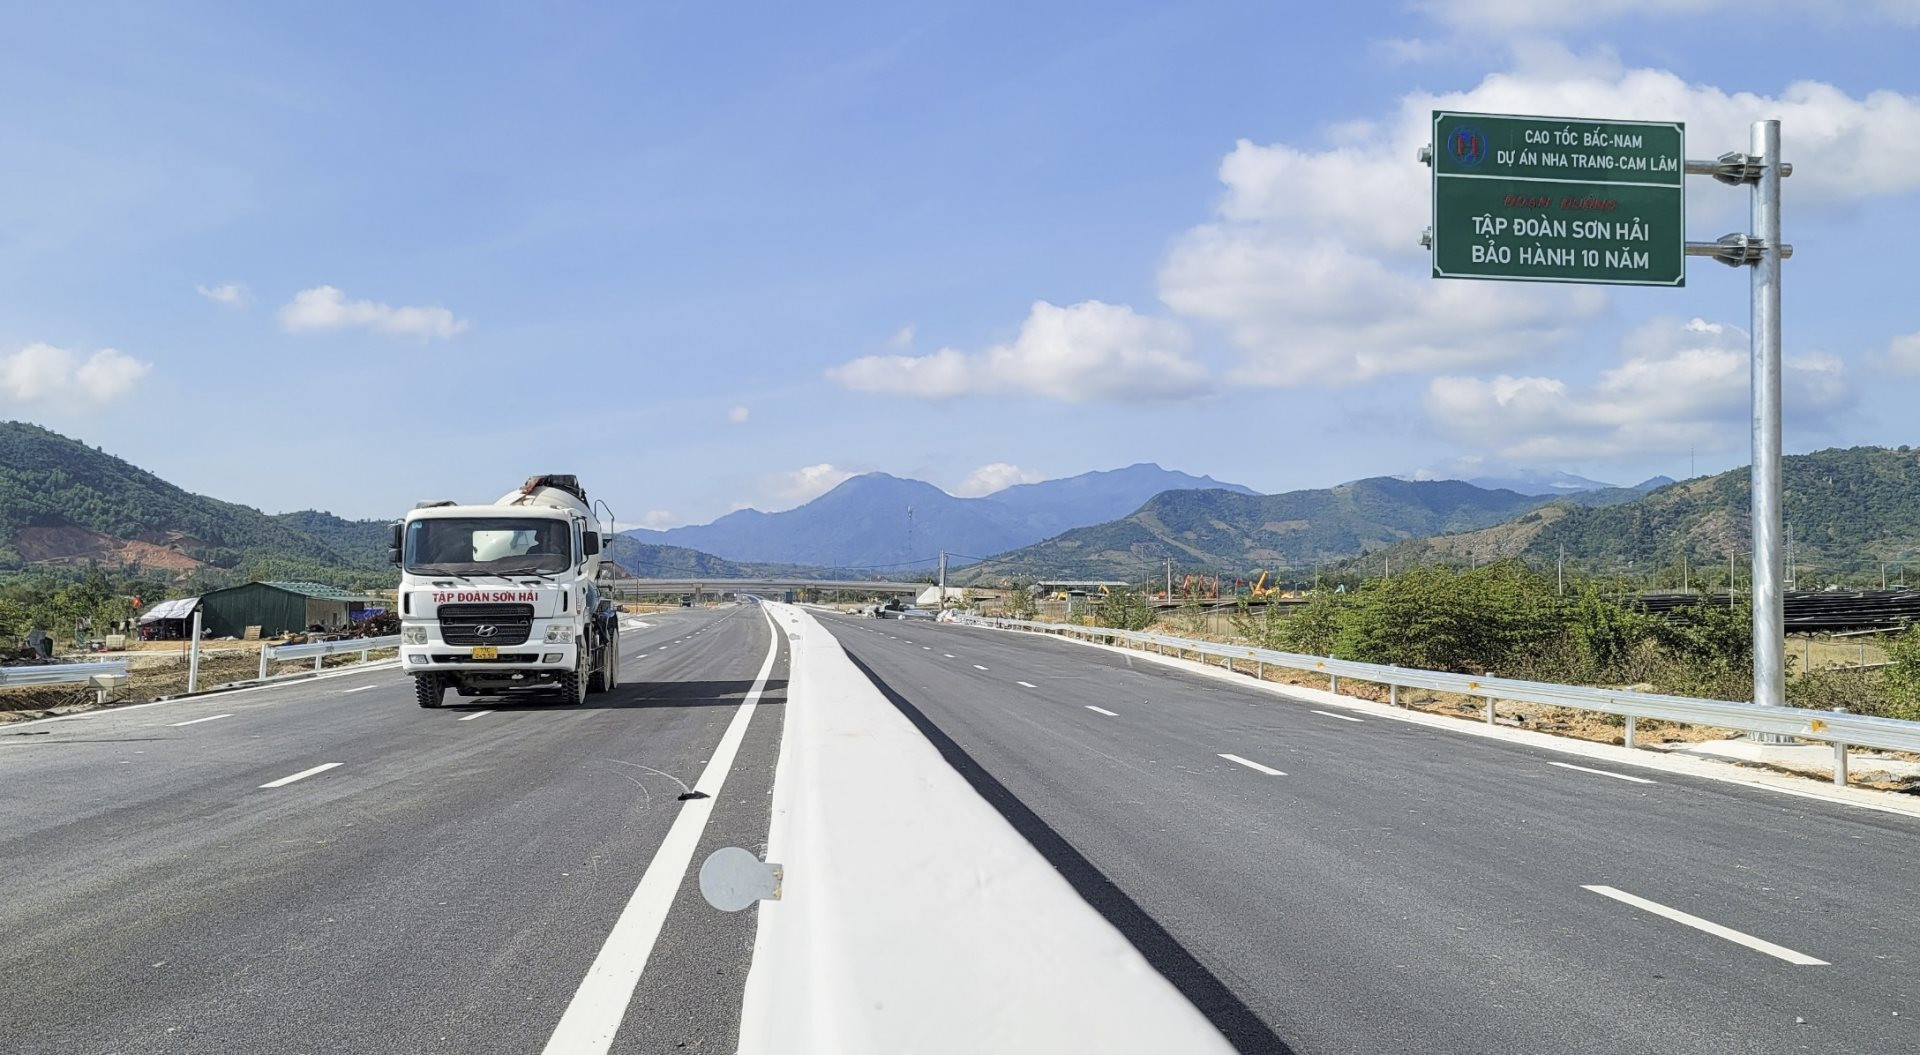 Nói được làm được: Tập đoàn Sơn Hải chính thức vượt tiến độ cao tốc Nha Trang - Cam Lâm hơn 3 tháng, xin thông xe ngay trong tháng 5 - Ảnh 1.